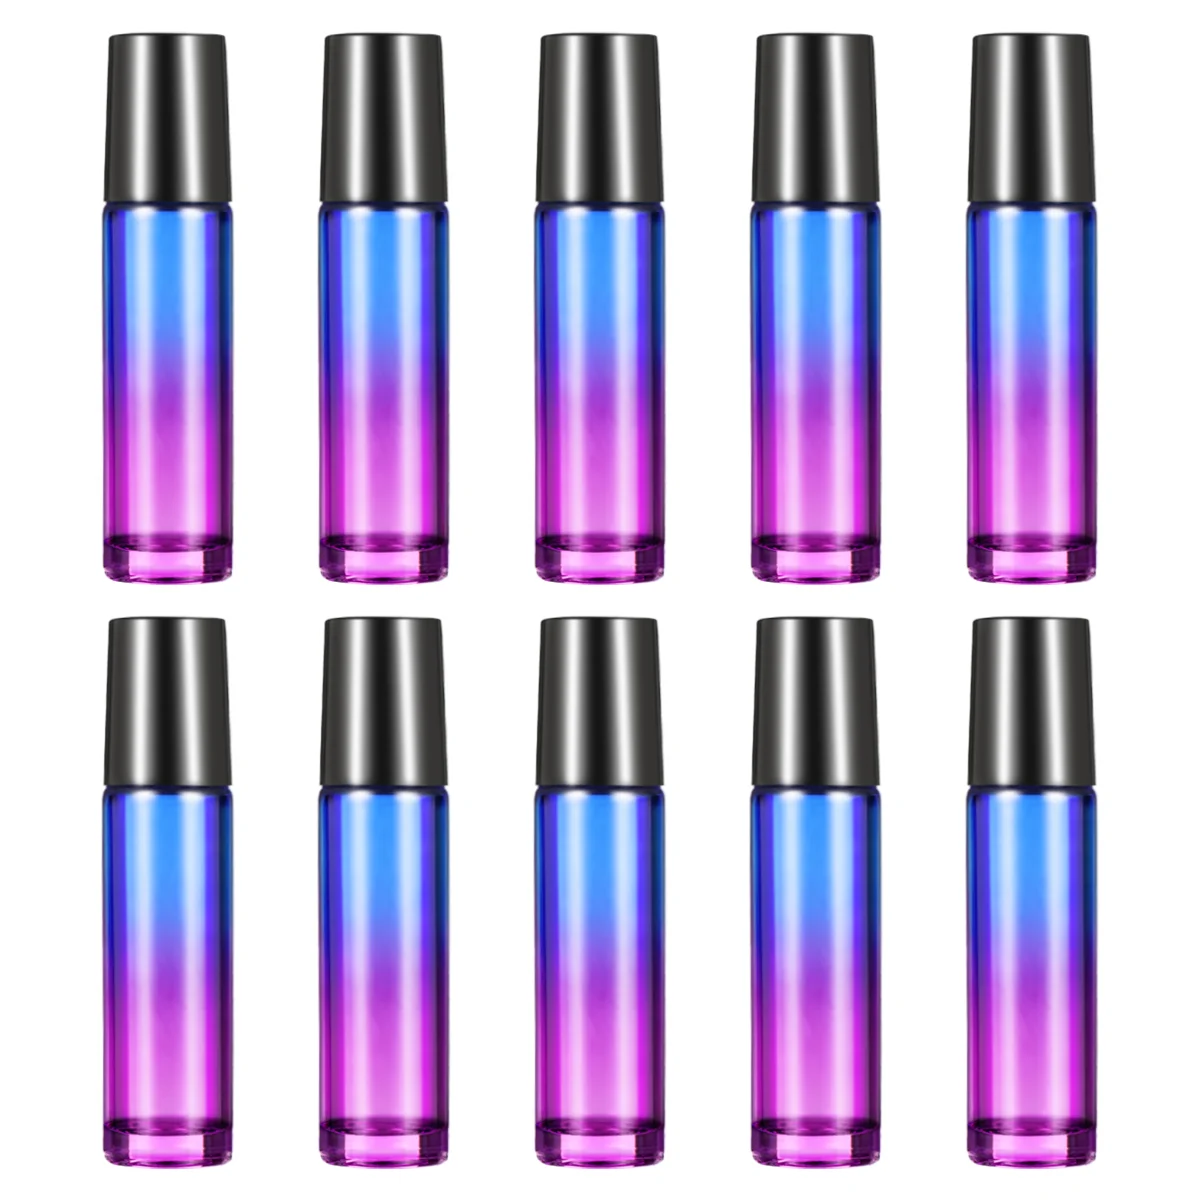 

ROSENICE 10pcs 10ML Glass Roller Balls Gradient Roller Bottles with 2pcs Opener Pry Tool for Essential Oils Perfume Bottle (Blue